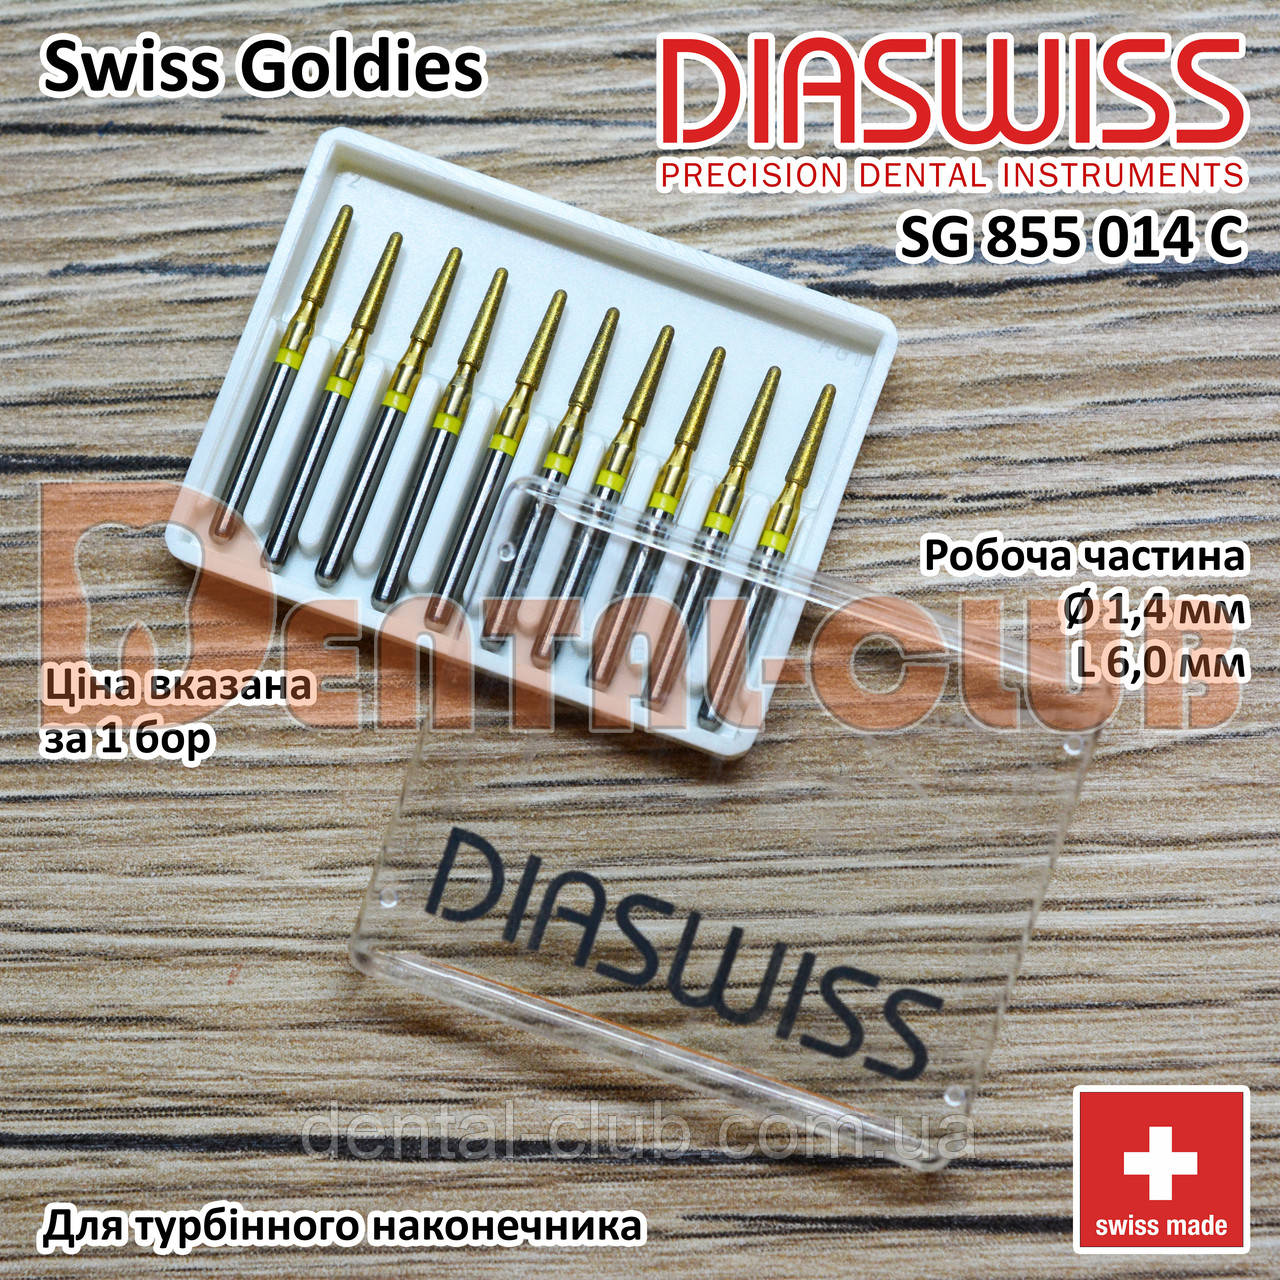 SG855/014 SFC - Swiss Goldies Diaswiss бор алмазний для турбіни (Діасвіс) Швейцарія цін/кат 3